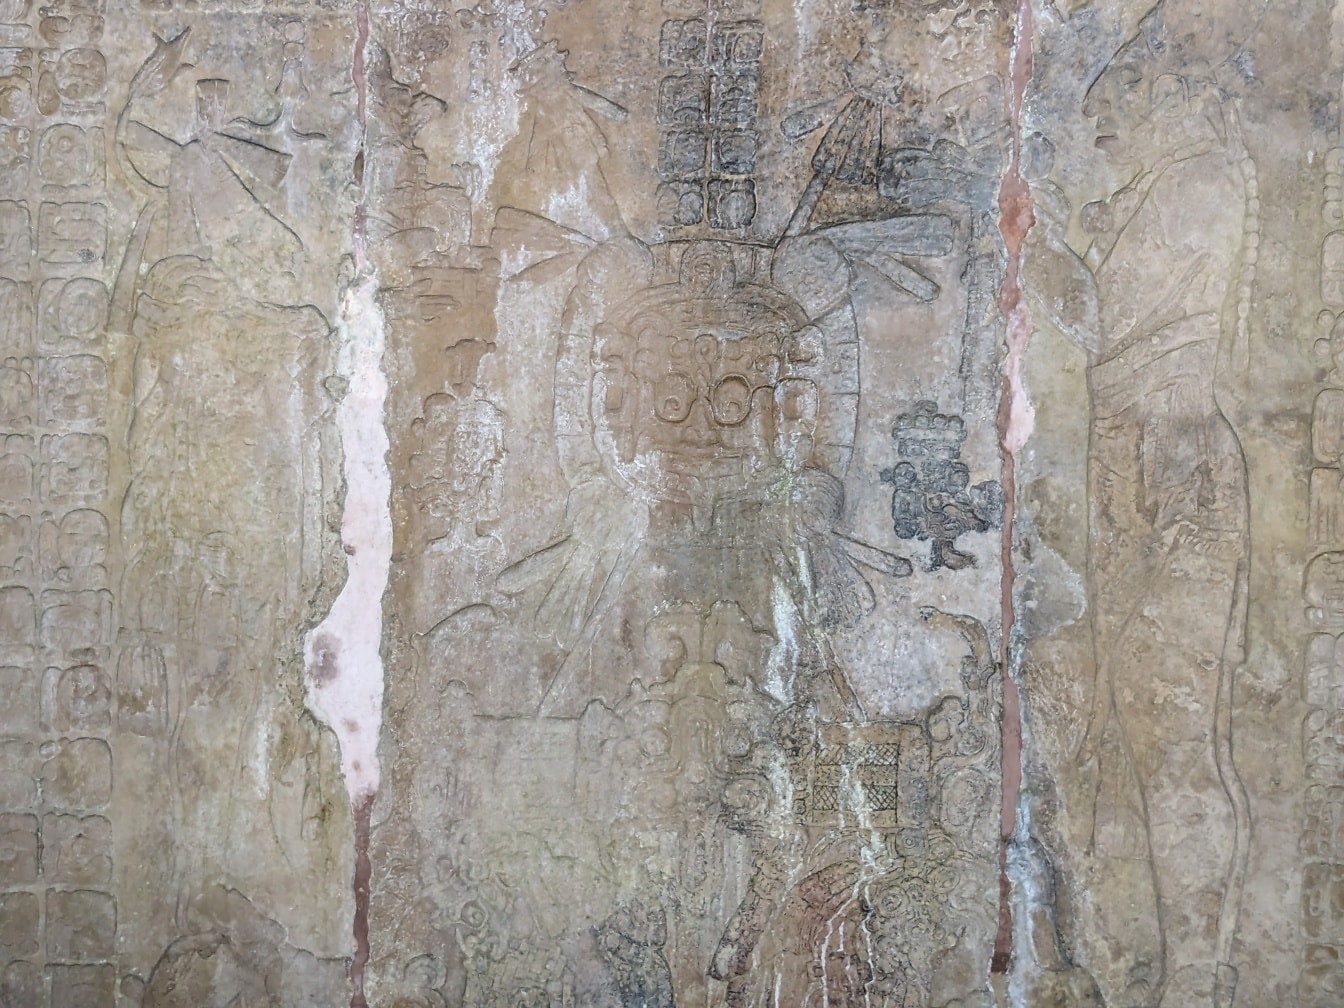 Каменная стена с резьбой, изображающей цивилизацию майя